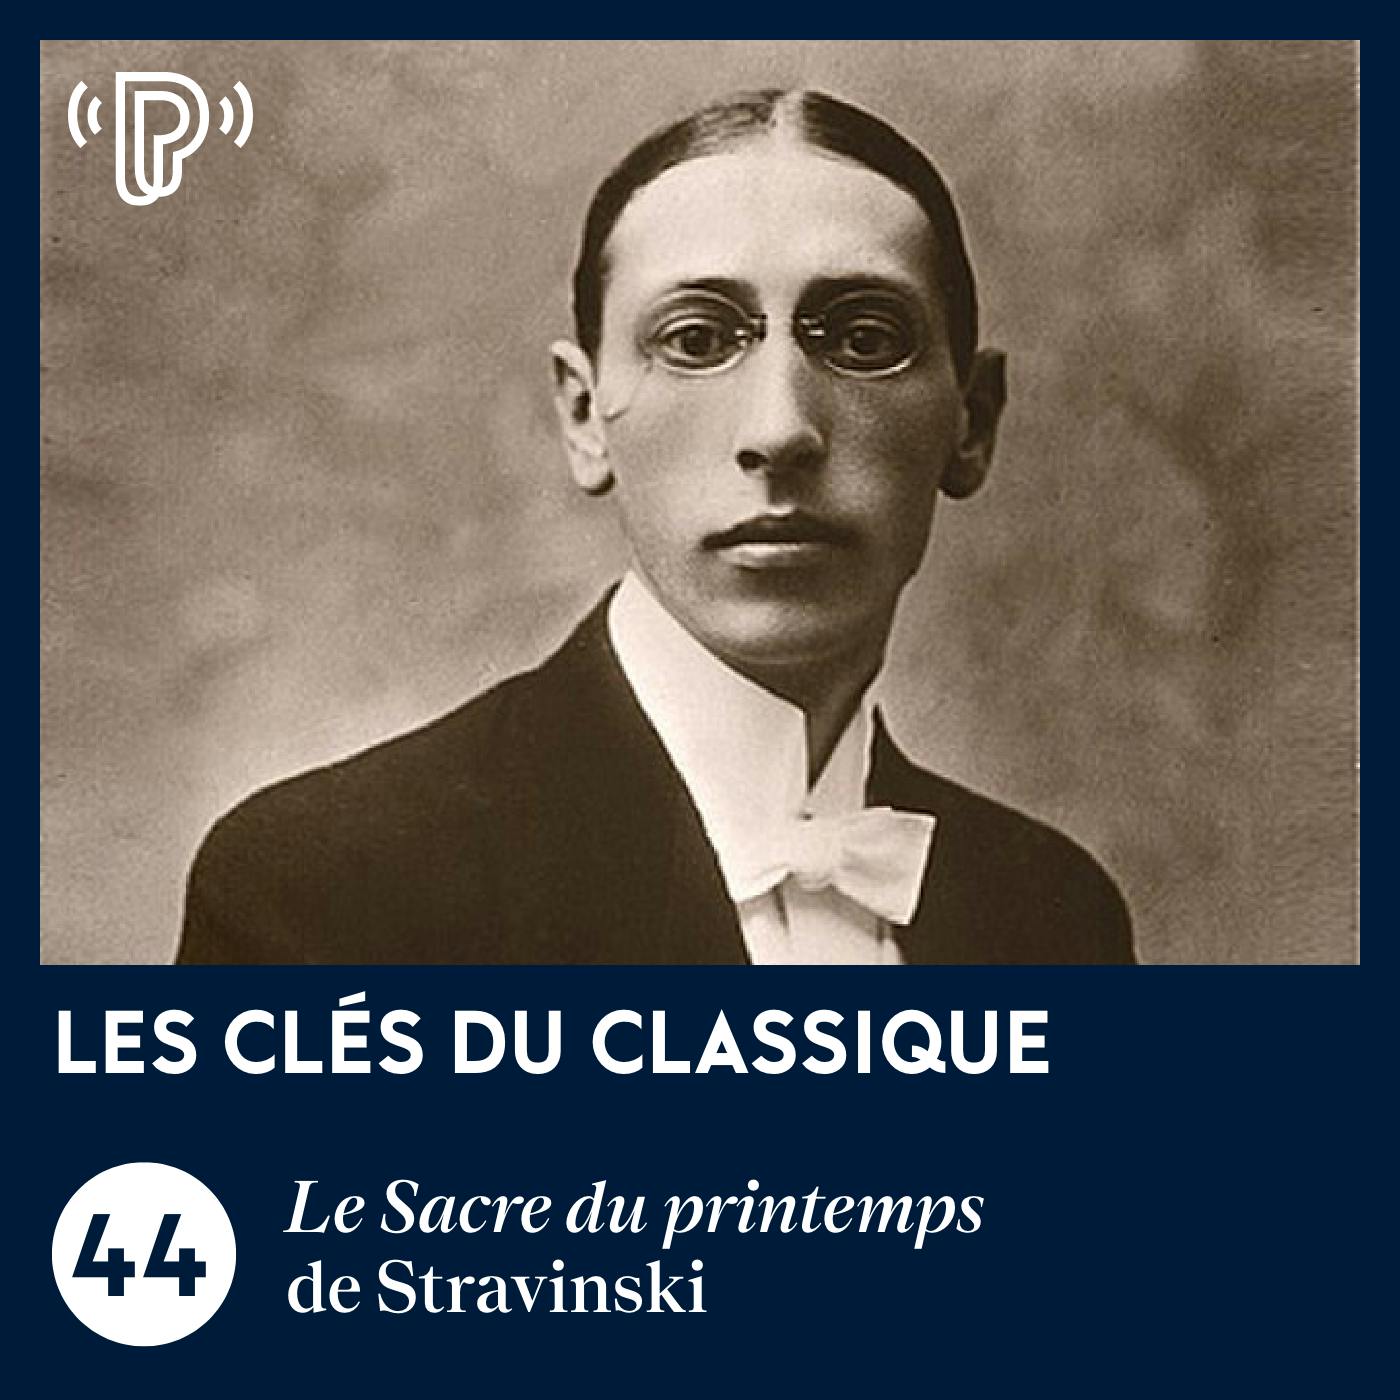 Le Sacre du printemps de Stravinski | Les Clés du classique #44